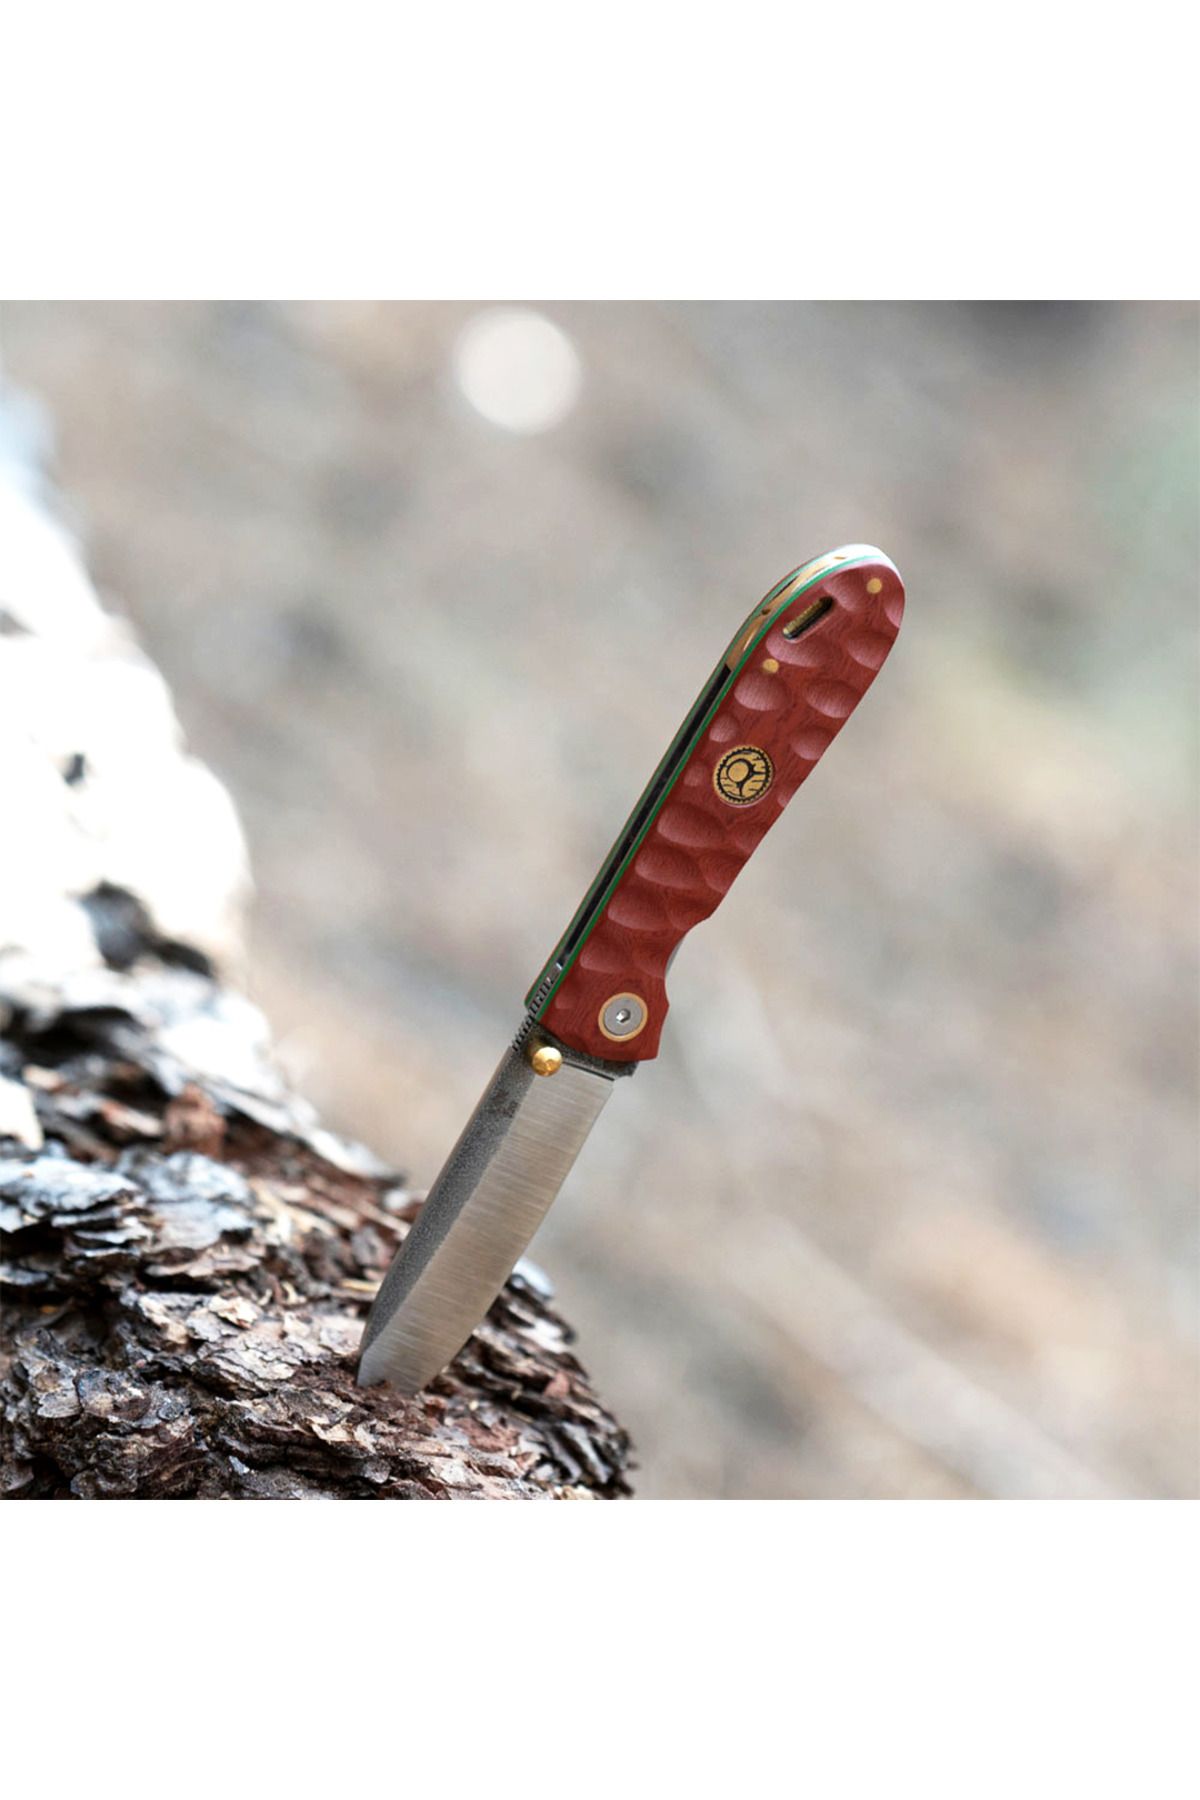 KAM KNIFE El Yapımı Kılıflı Kamp Çakısı - Böhler N690 - T20 N690 Kızıl